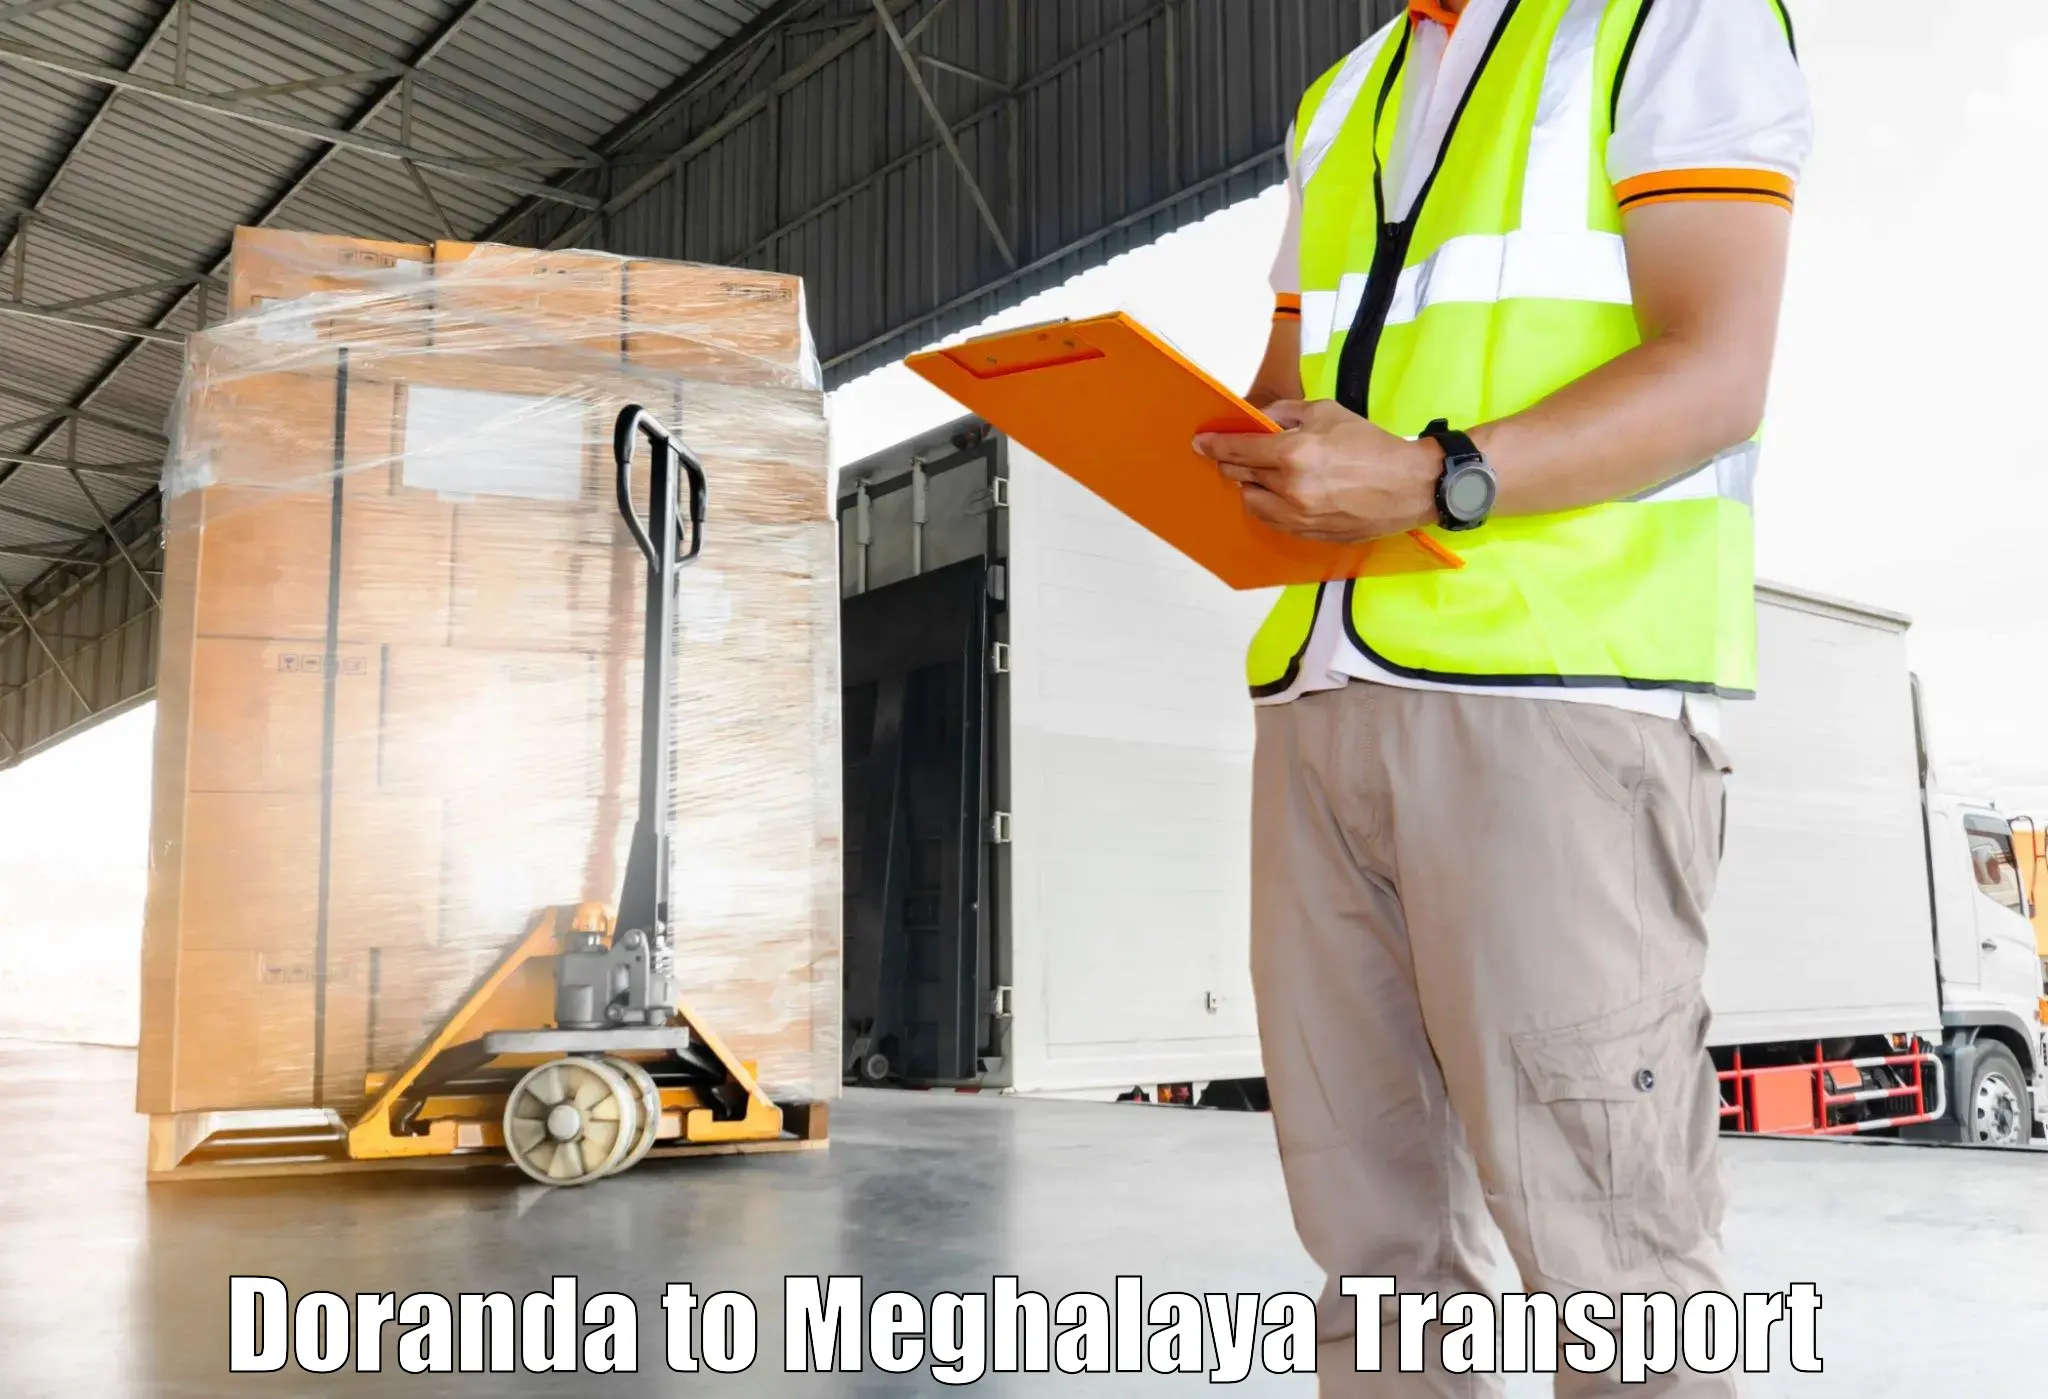 Air cargo transport services Doranda to Jaintia Hills